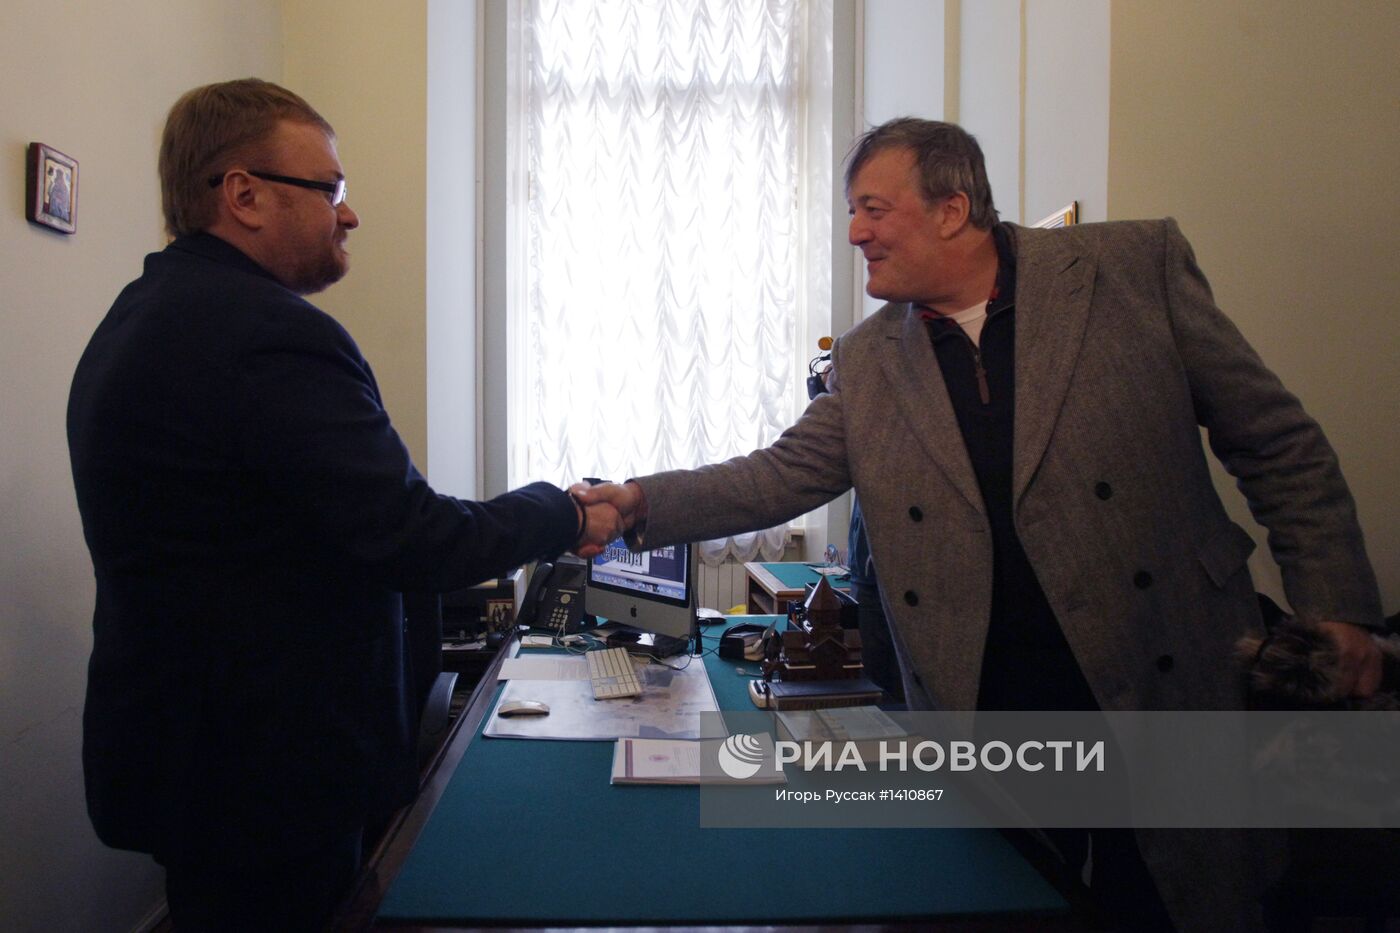 Стивен Фрай прибыл с визитом в Санкт-Петербург